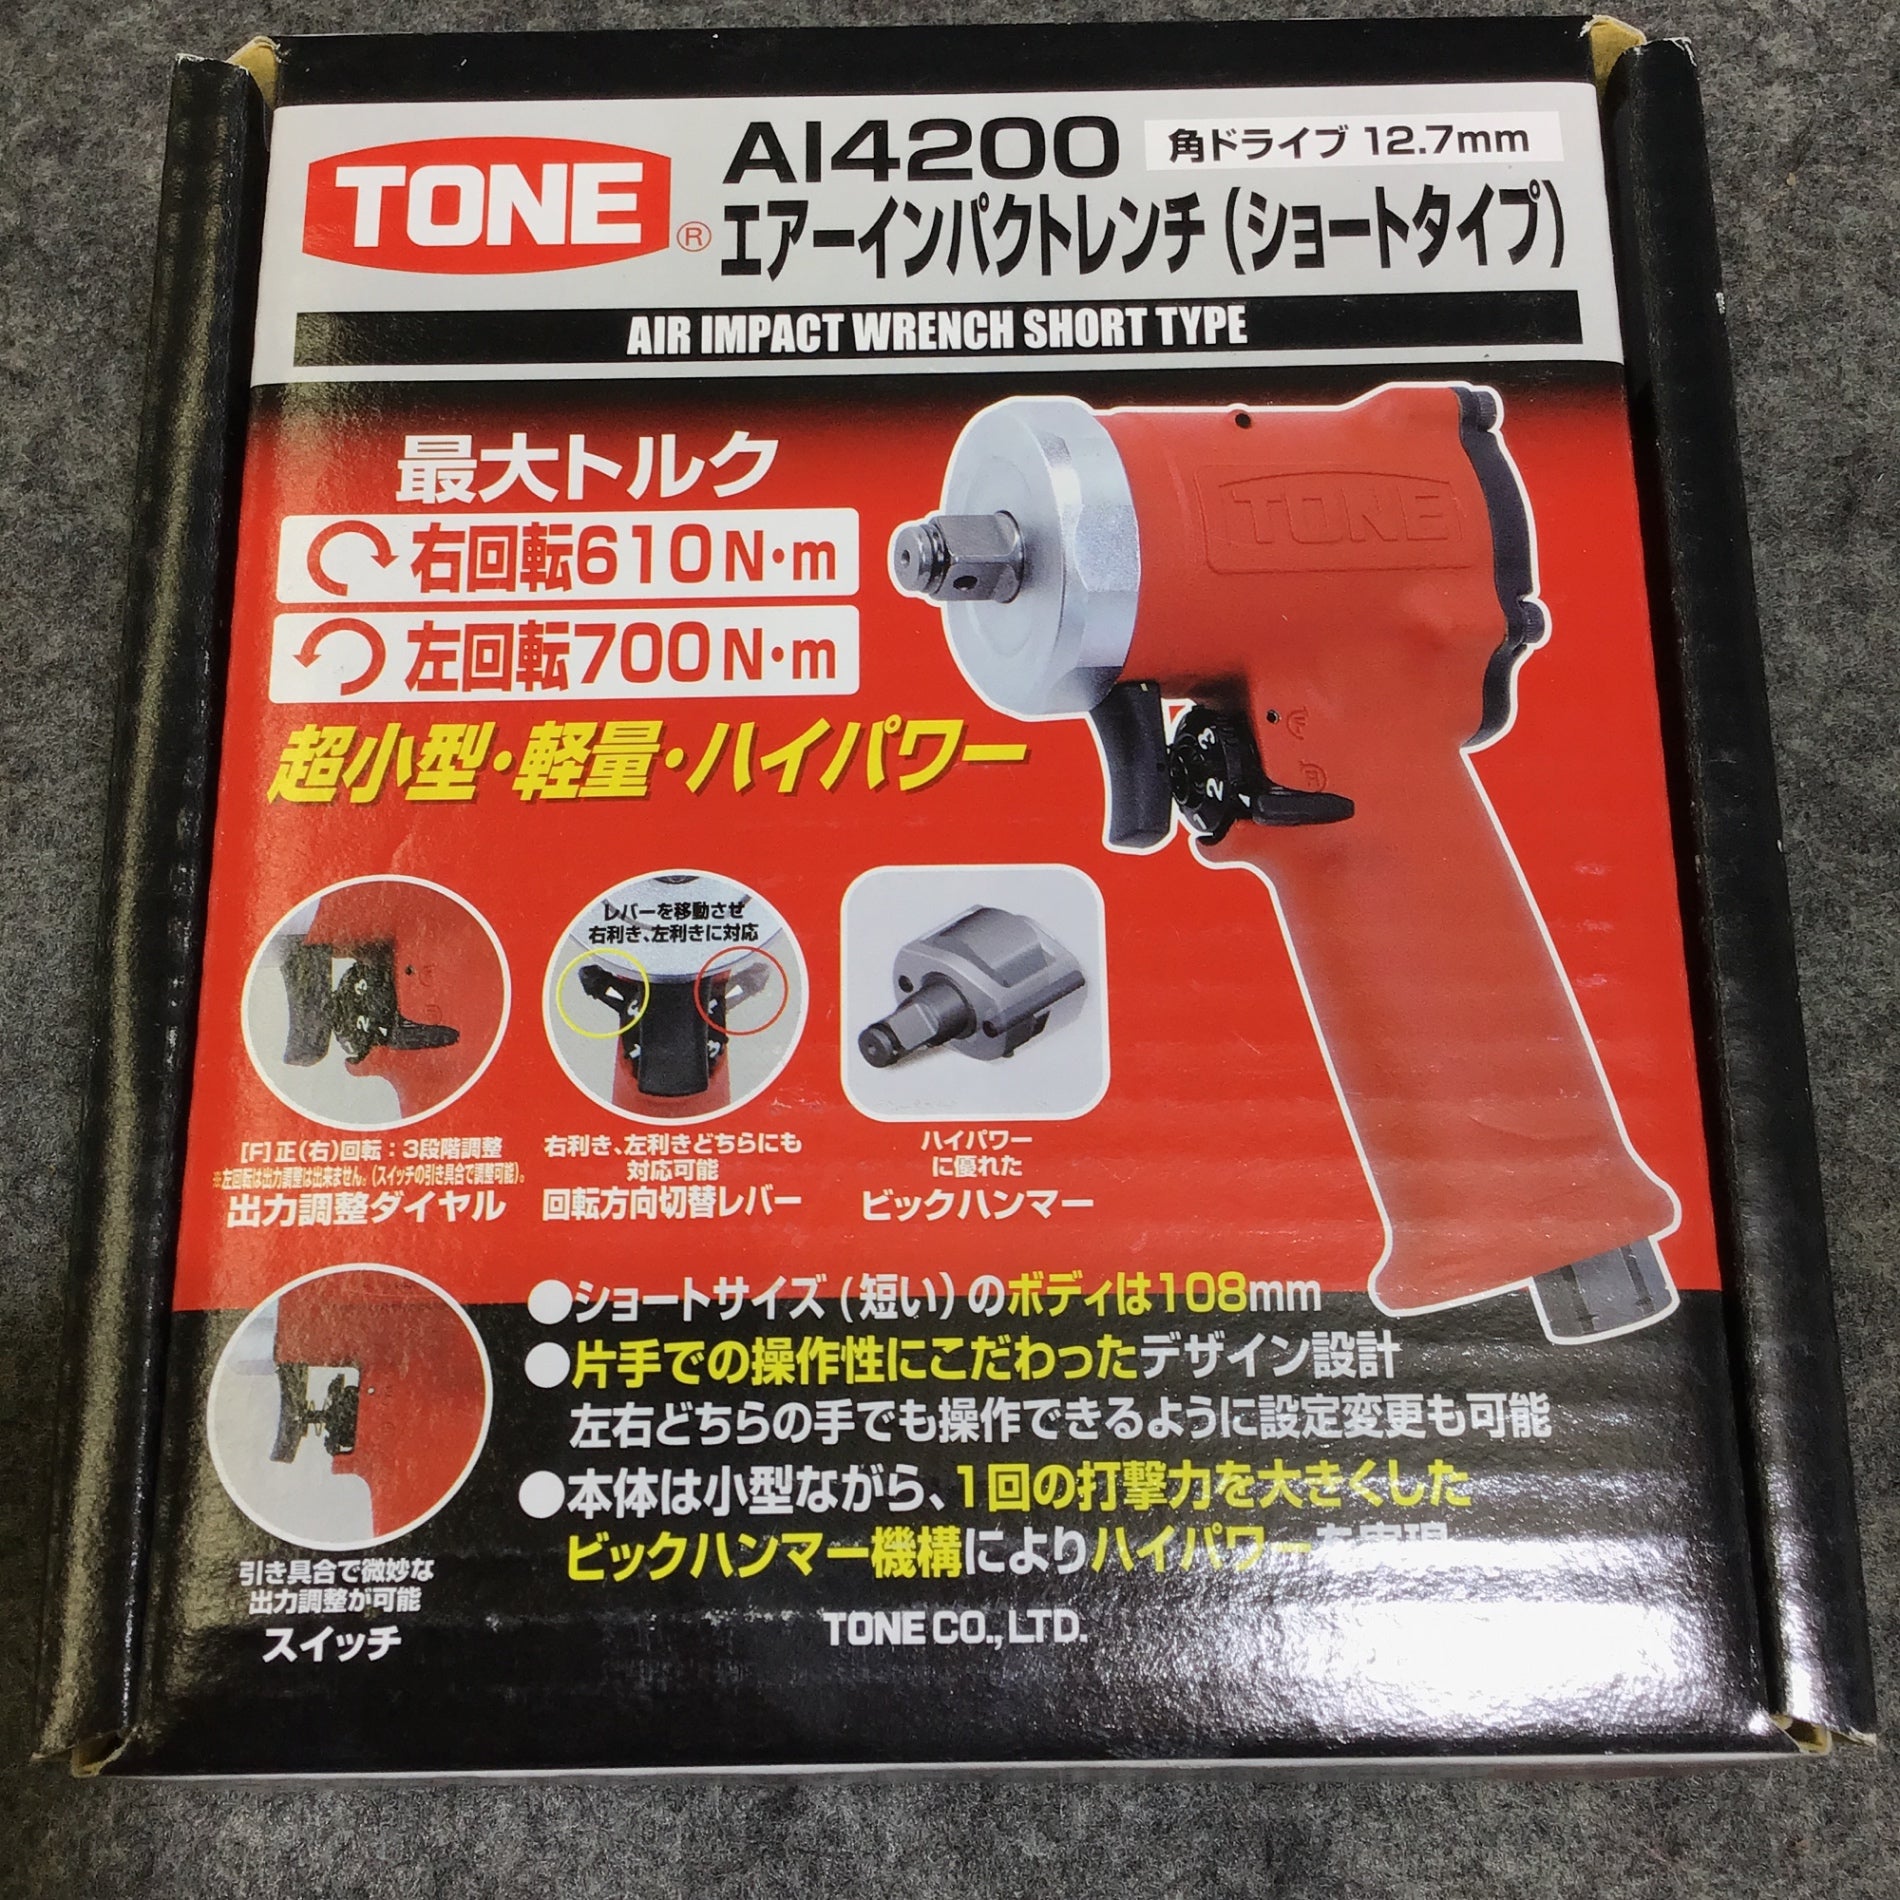 トネ(TONE) エア-インパクトレンチ(ショートタイプ) 差込角12.7mm(1/2